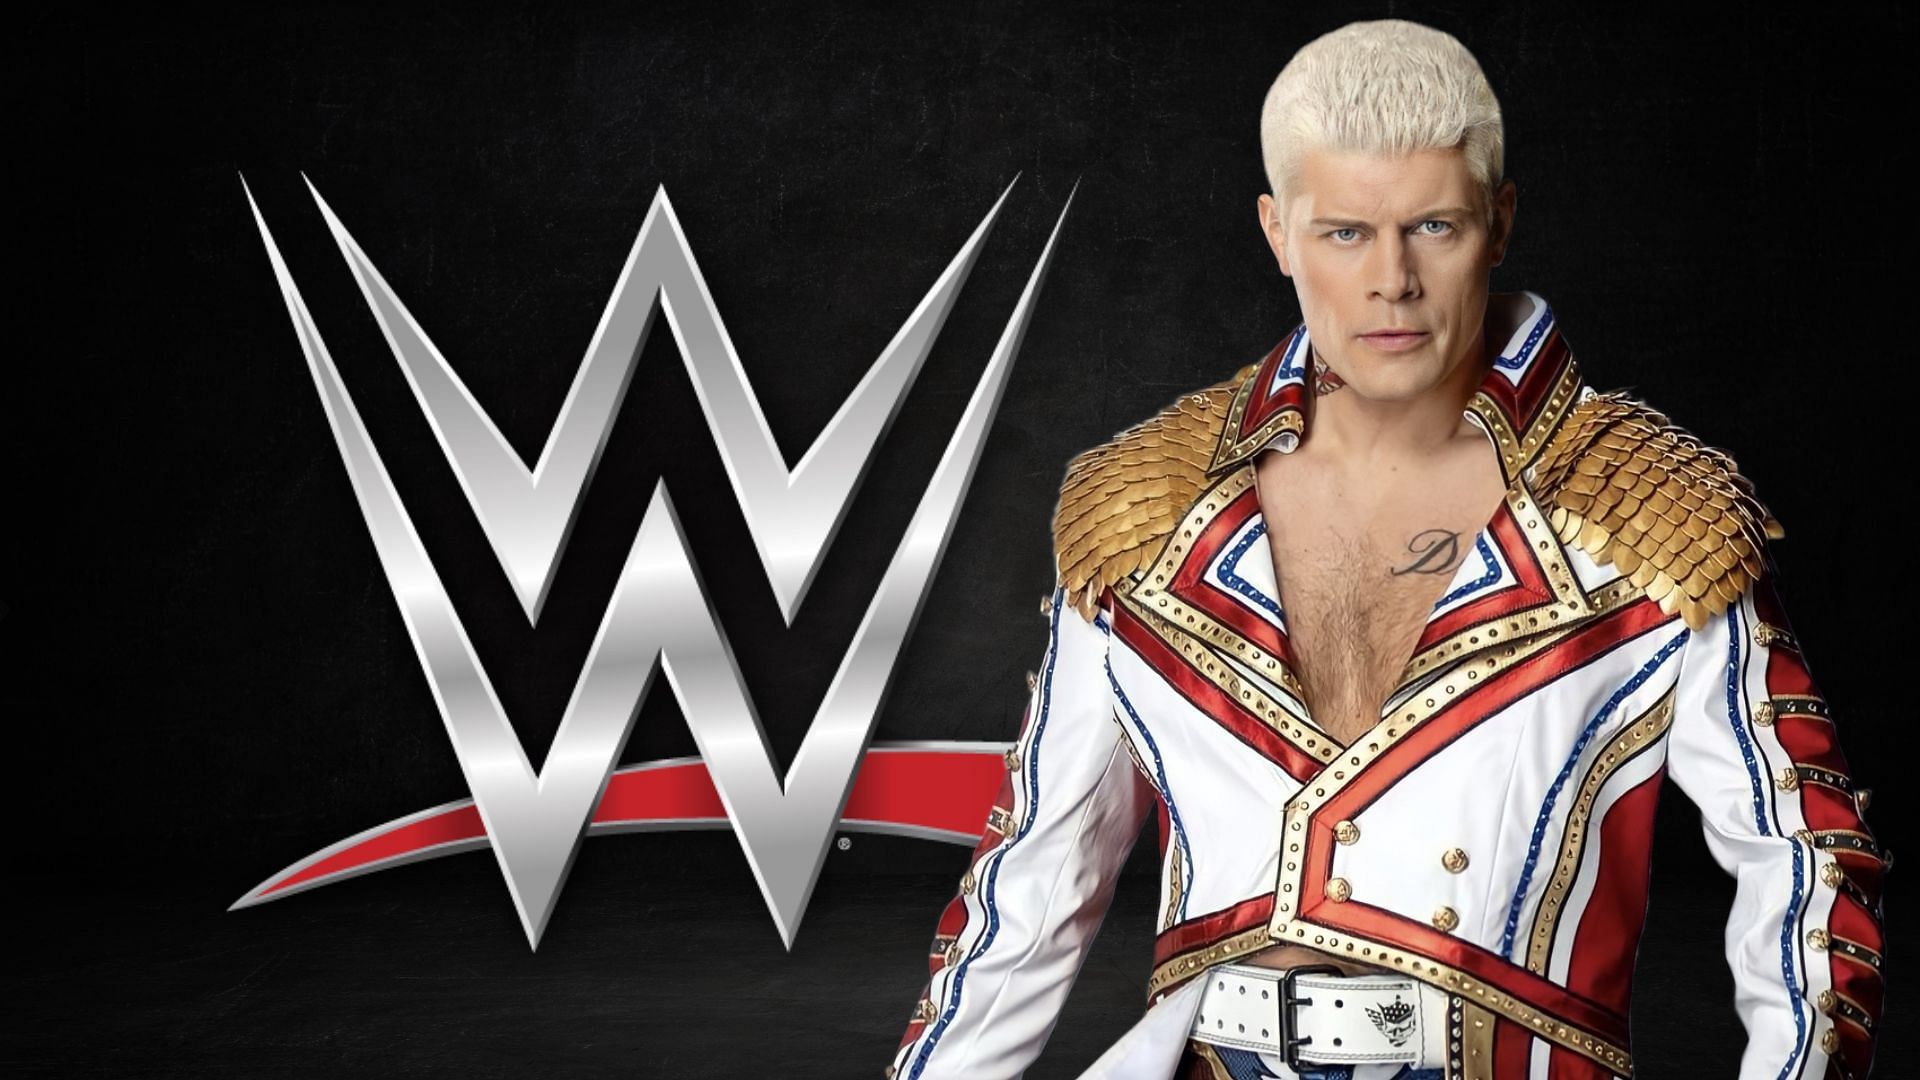 Cody Rhodes will go up against Brock Lesnar again soon